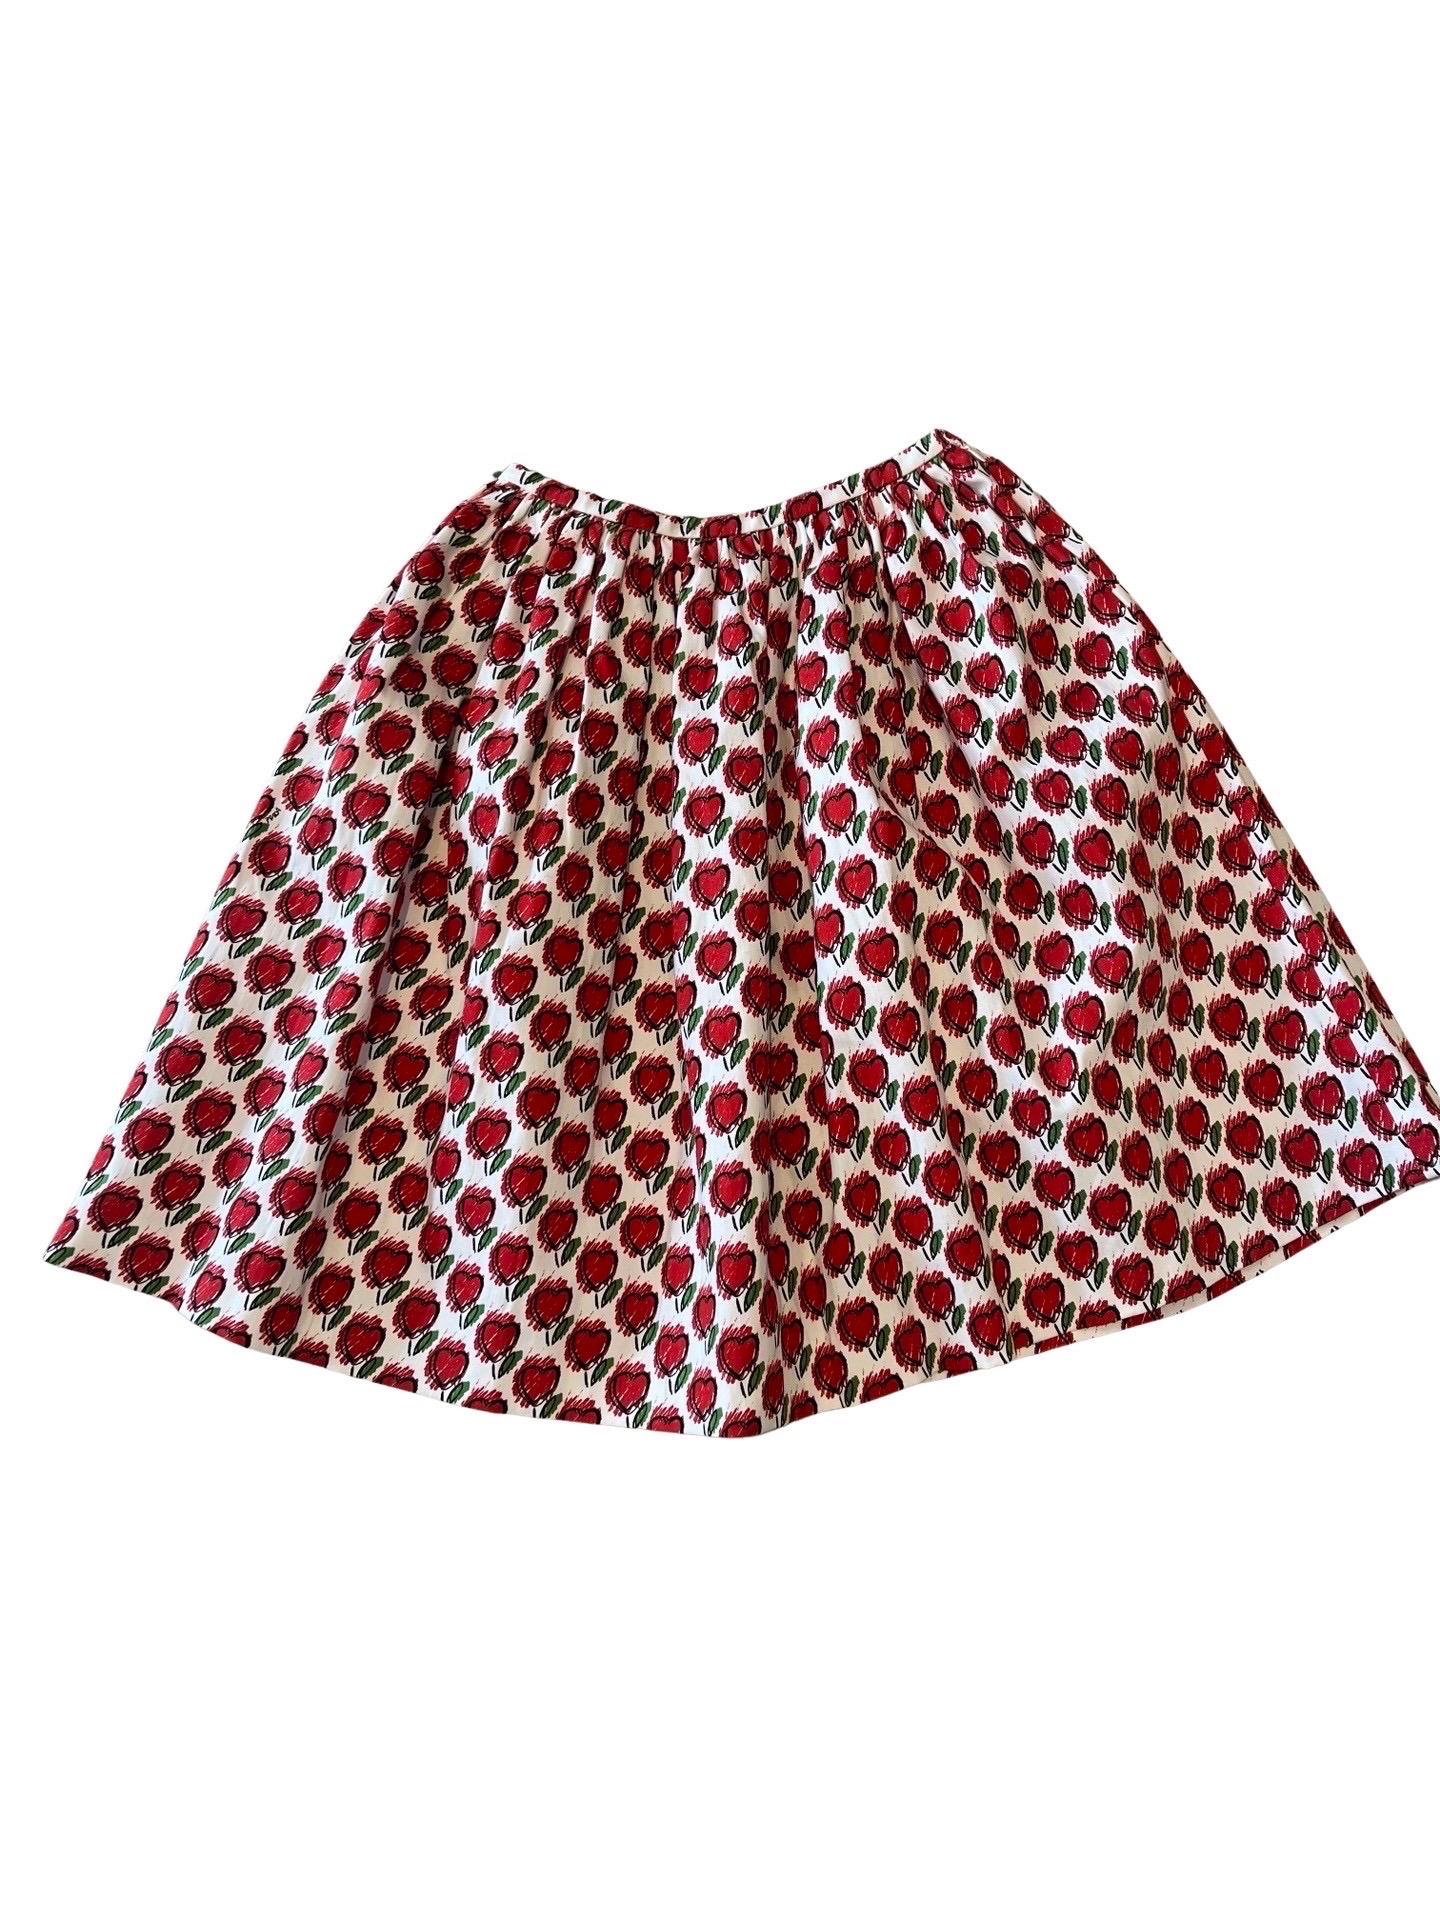 Women's or Men's 2016 Prada Cotton Hearts Full Skirt For Sale